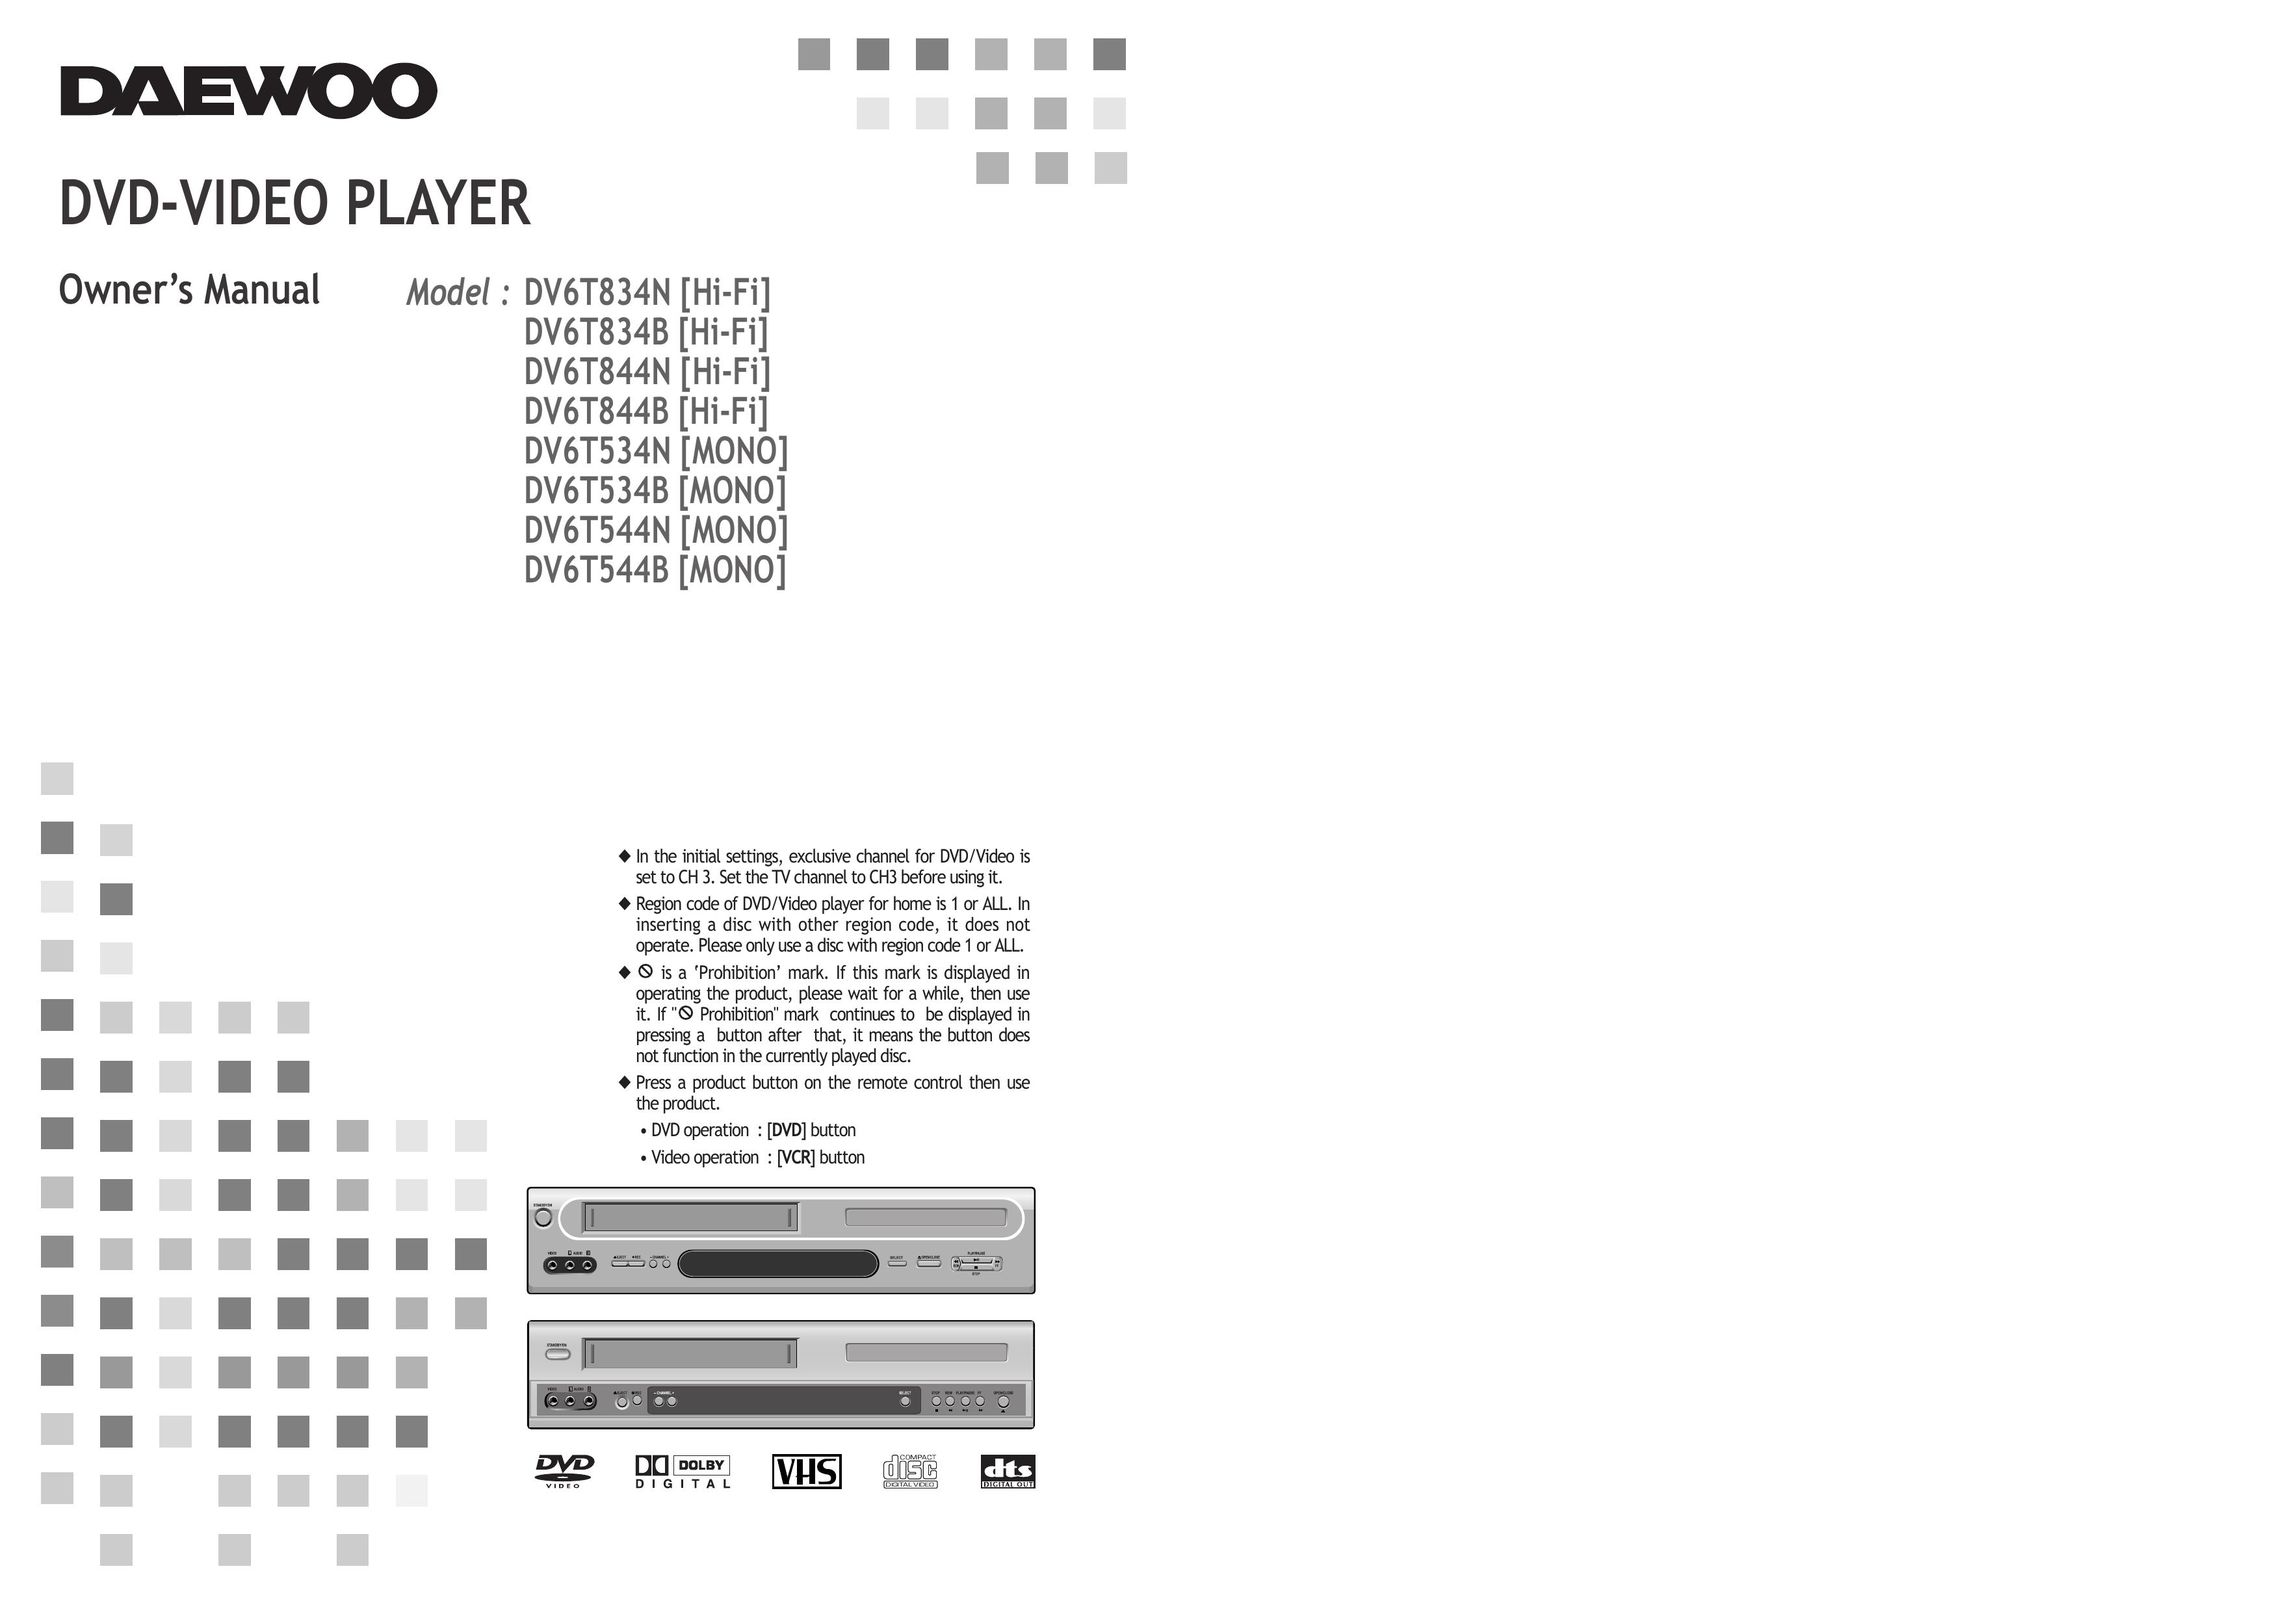 Daewoo DV6T834B DVD Player User Manual